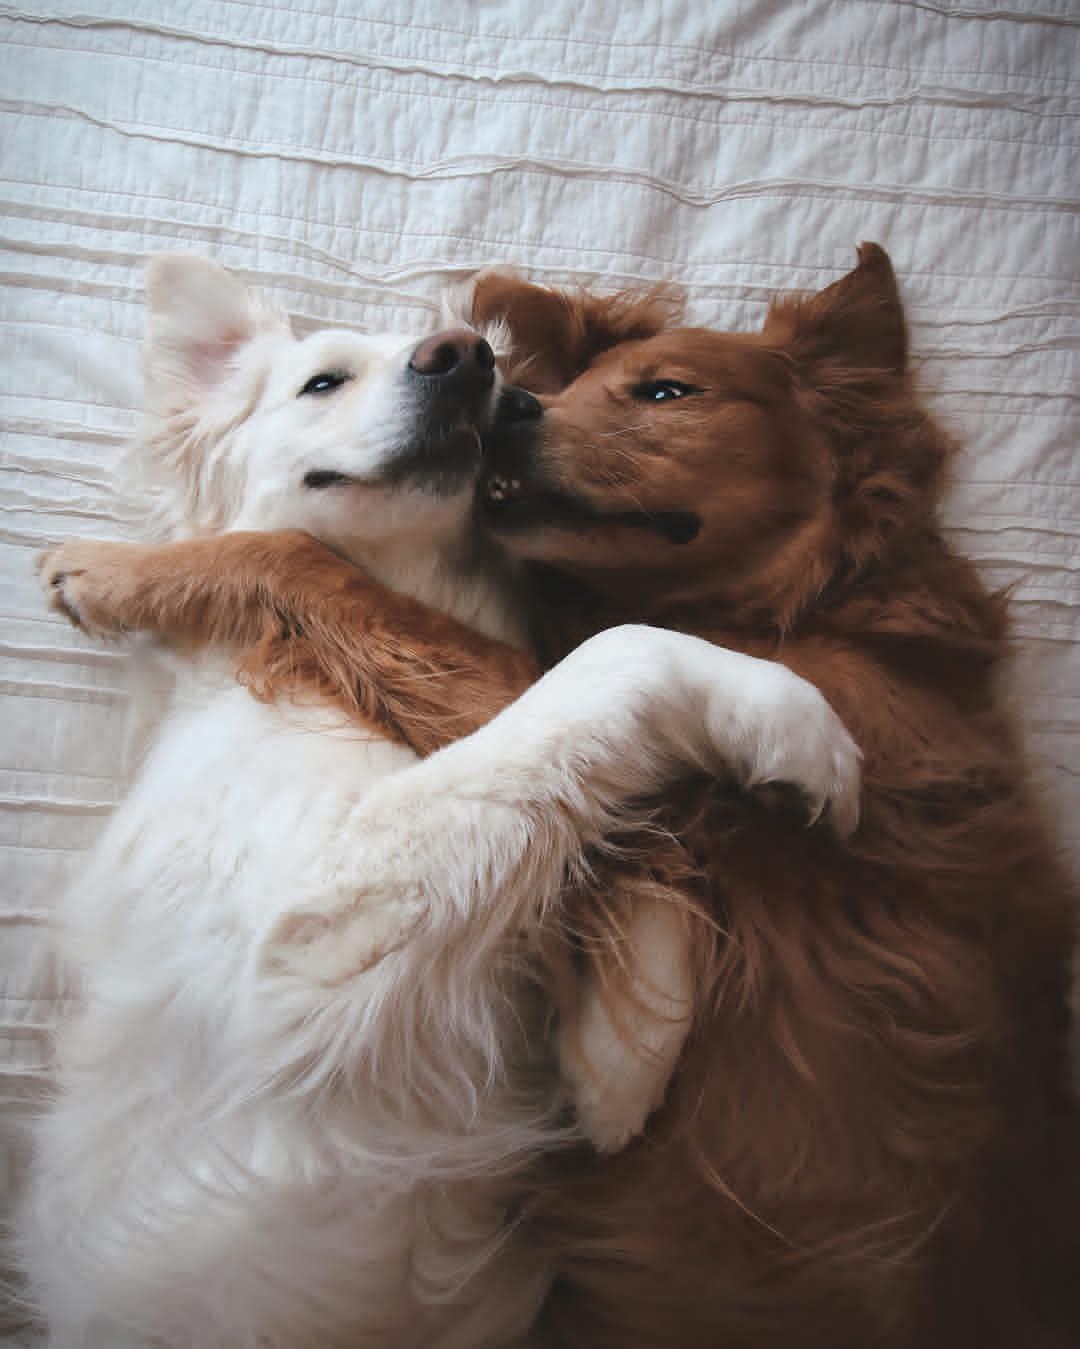 Chó và chó, lúc nào cũng dính lấy nhau rất đáng yêu, bạn đã từng thấy chưa? Hãy xem ngay hình ảnh này để được chứng kiến những cảnh tượng đáng yêu khi các chú chó không rời nhau.